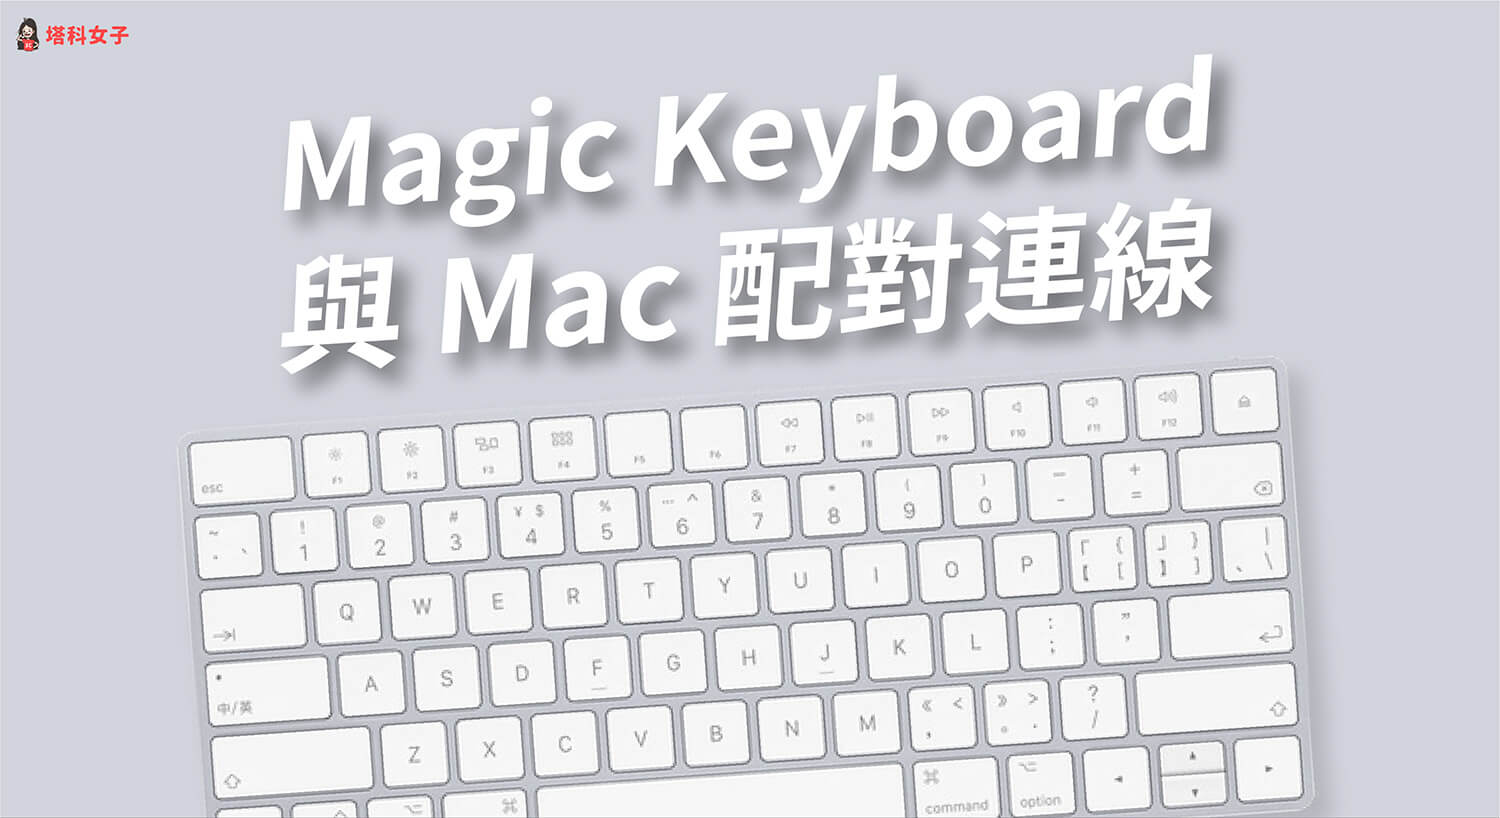 Magic Keyboard 如何與 Mac 配對連線？如何查看電量？完整教學